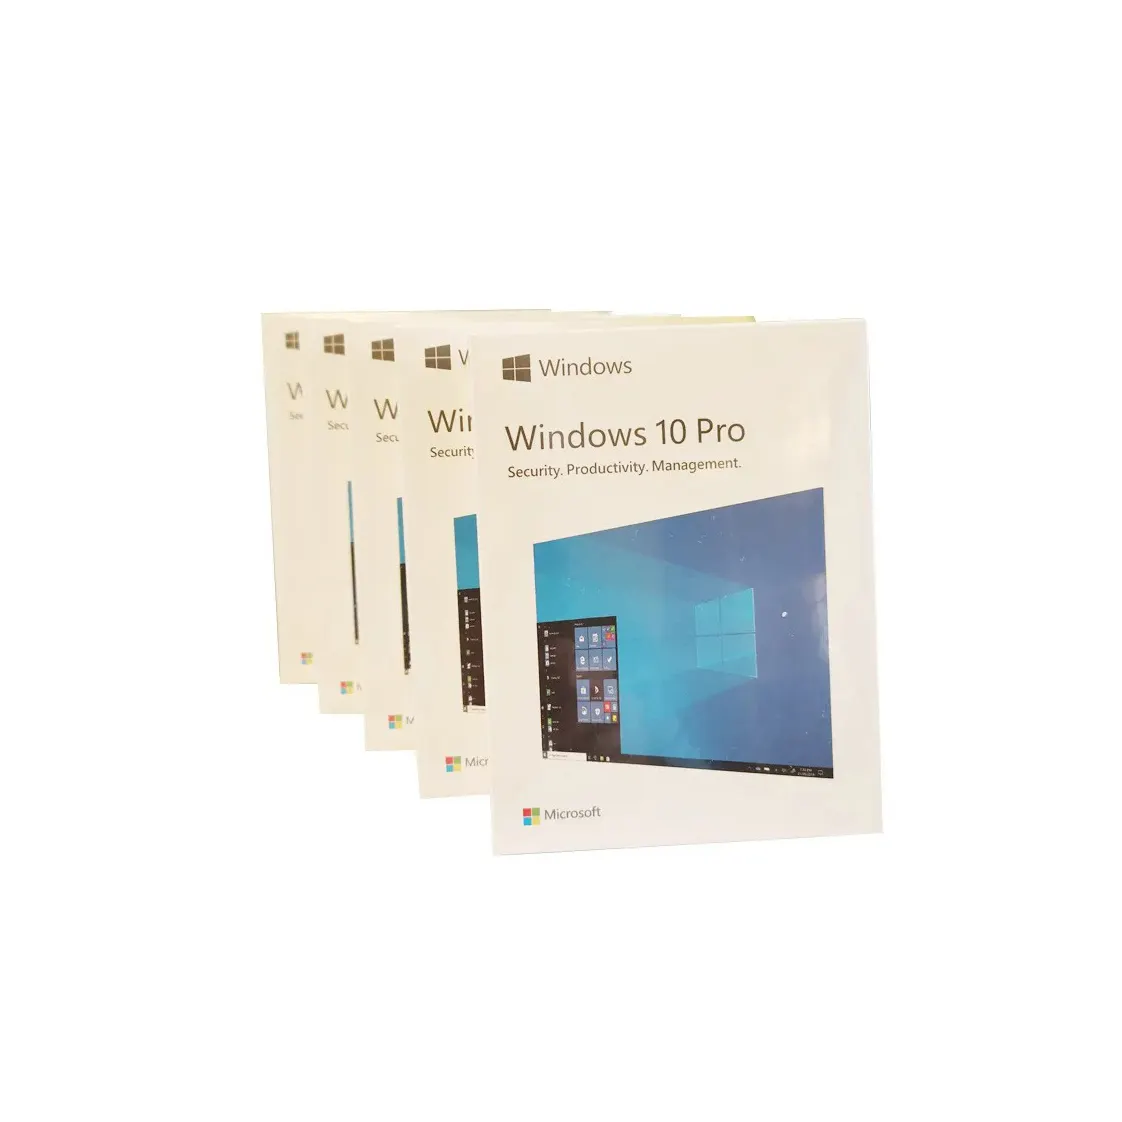 Windows 10 Pro (originale) chiave di licenza digitale (consegna e-mail in 2 ore) durata validità 1 PC, 1 utente